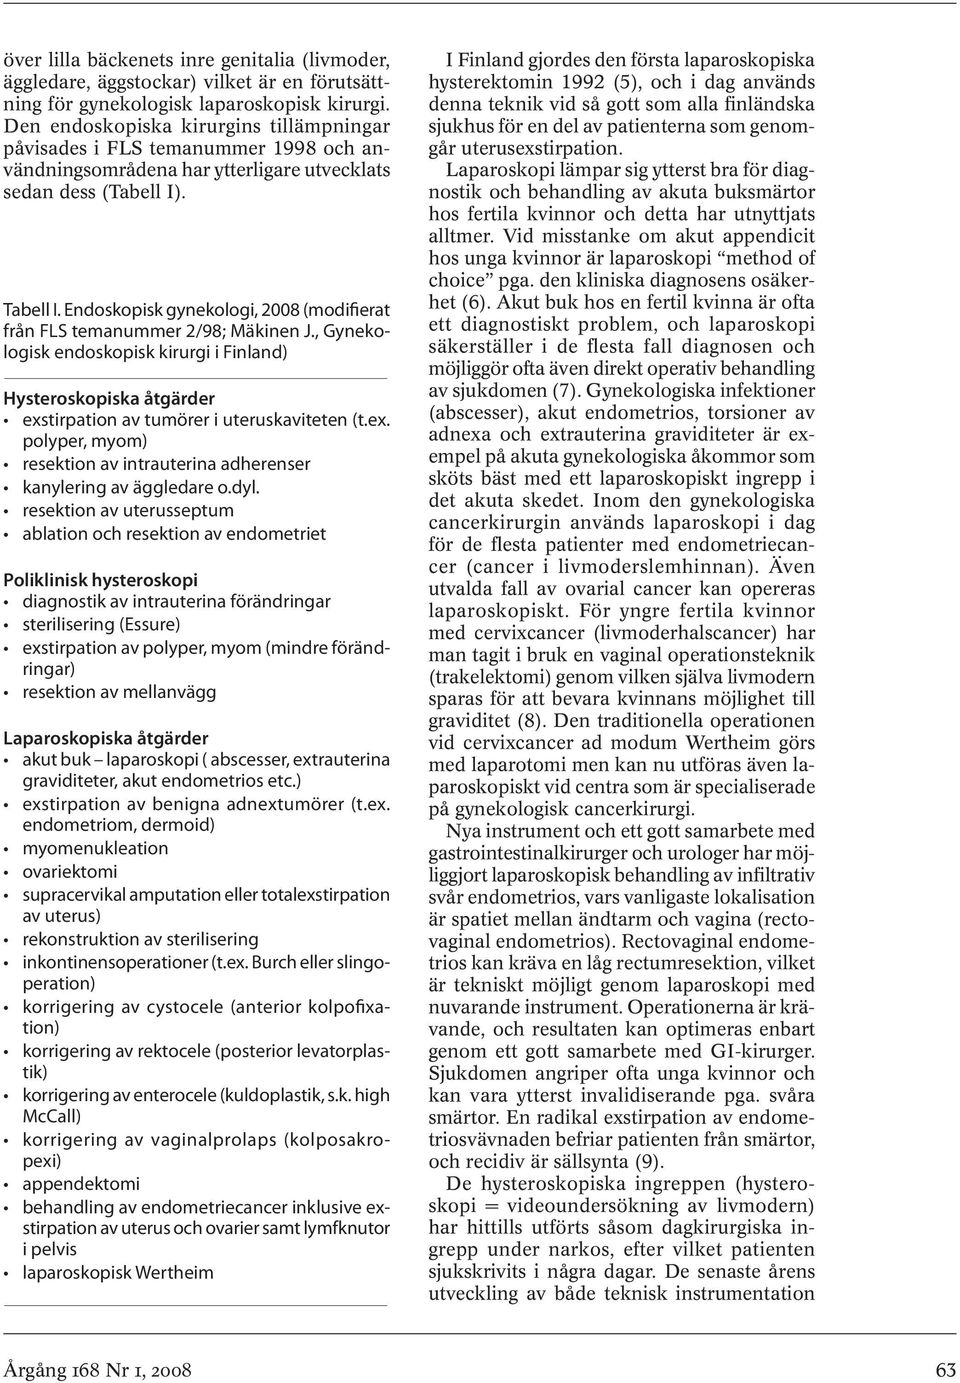 Endoskopisk gynekologi, 2008 (modifierat från FLS temanummer 2/98; Mäkinen J., Gynekologisk endoskopisk kirurgi i Finland) Hysteroskopiska åtgärder exs